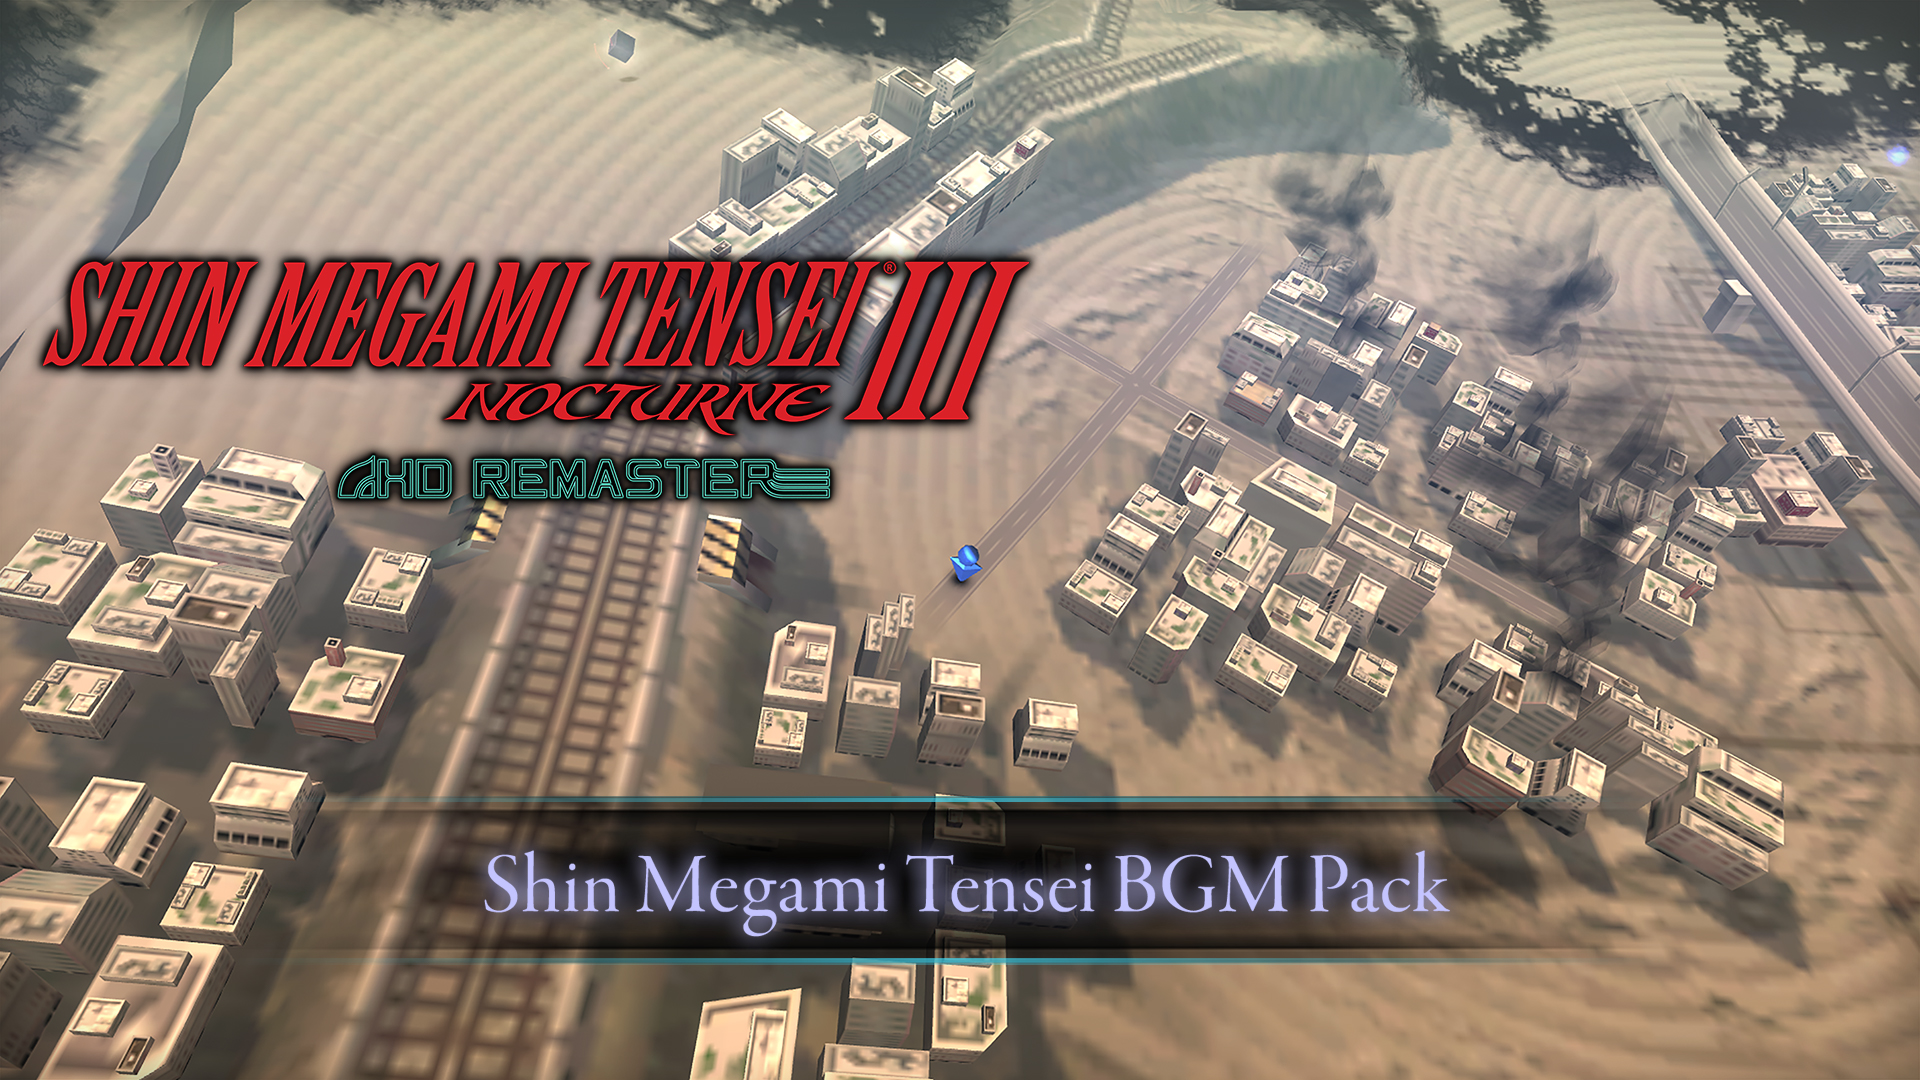 Shin Megami Tensei BGM Pack